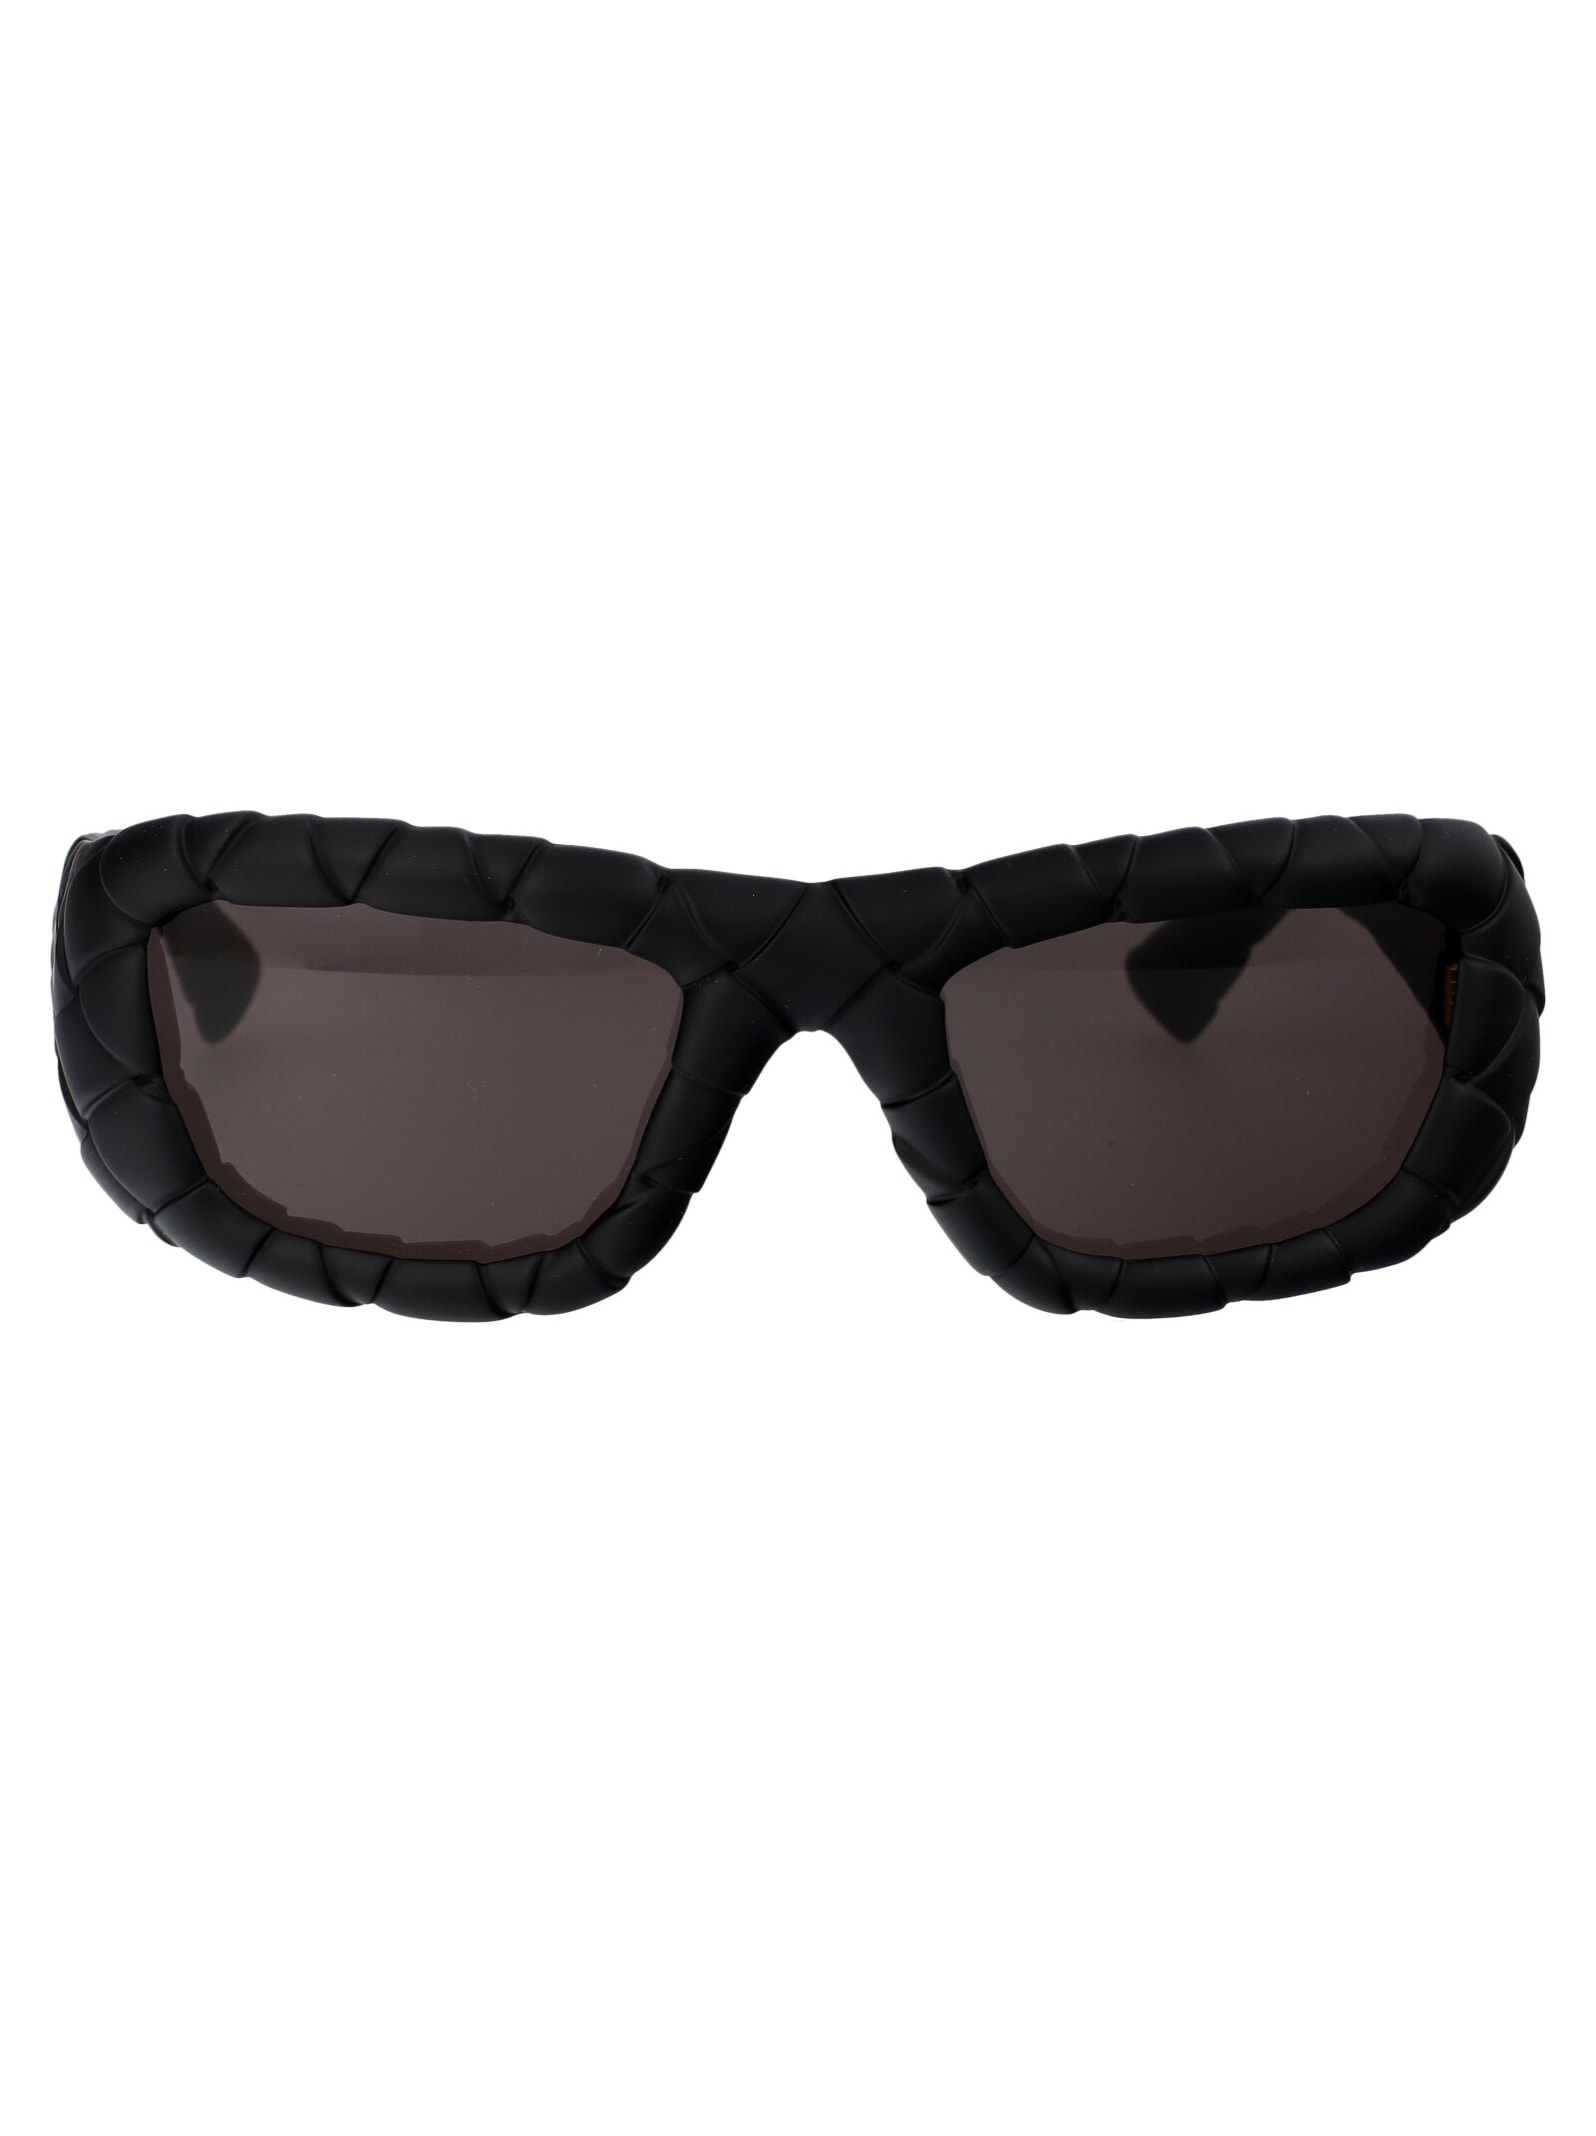 Bv1303s Sunglasses